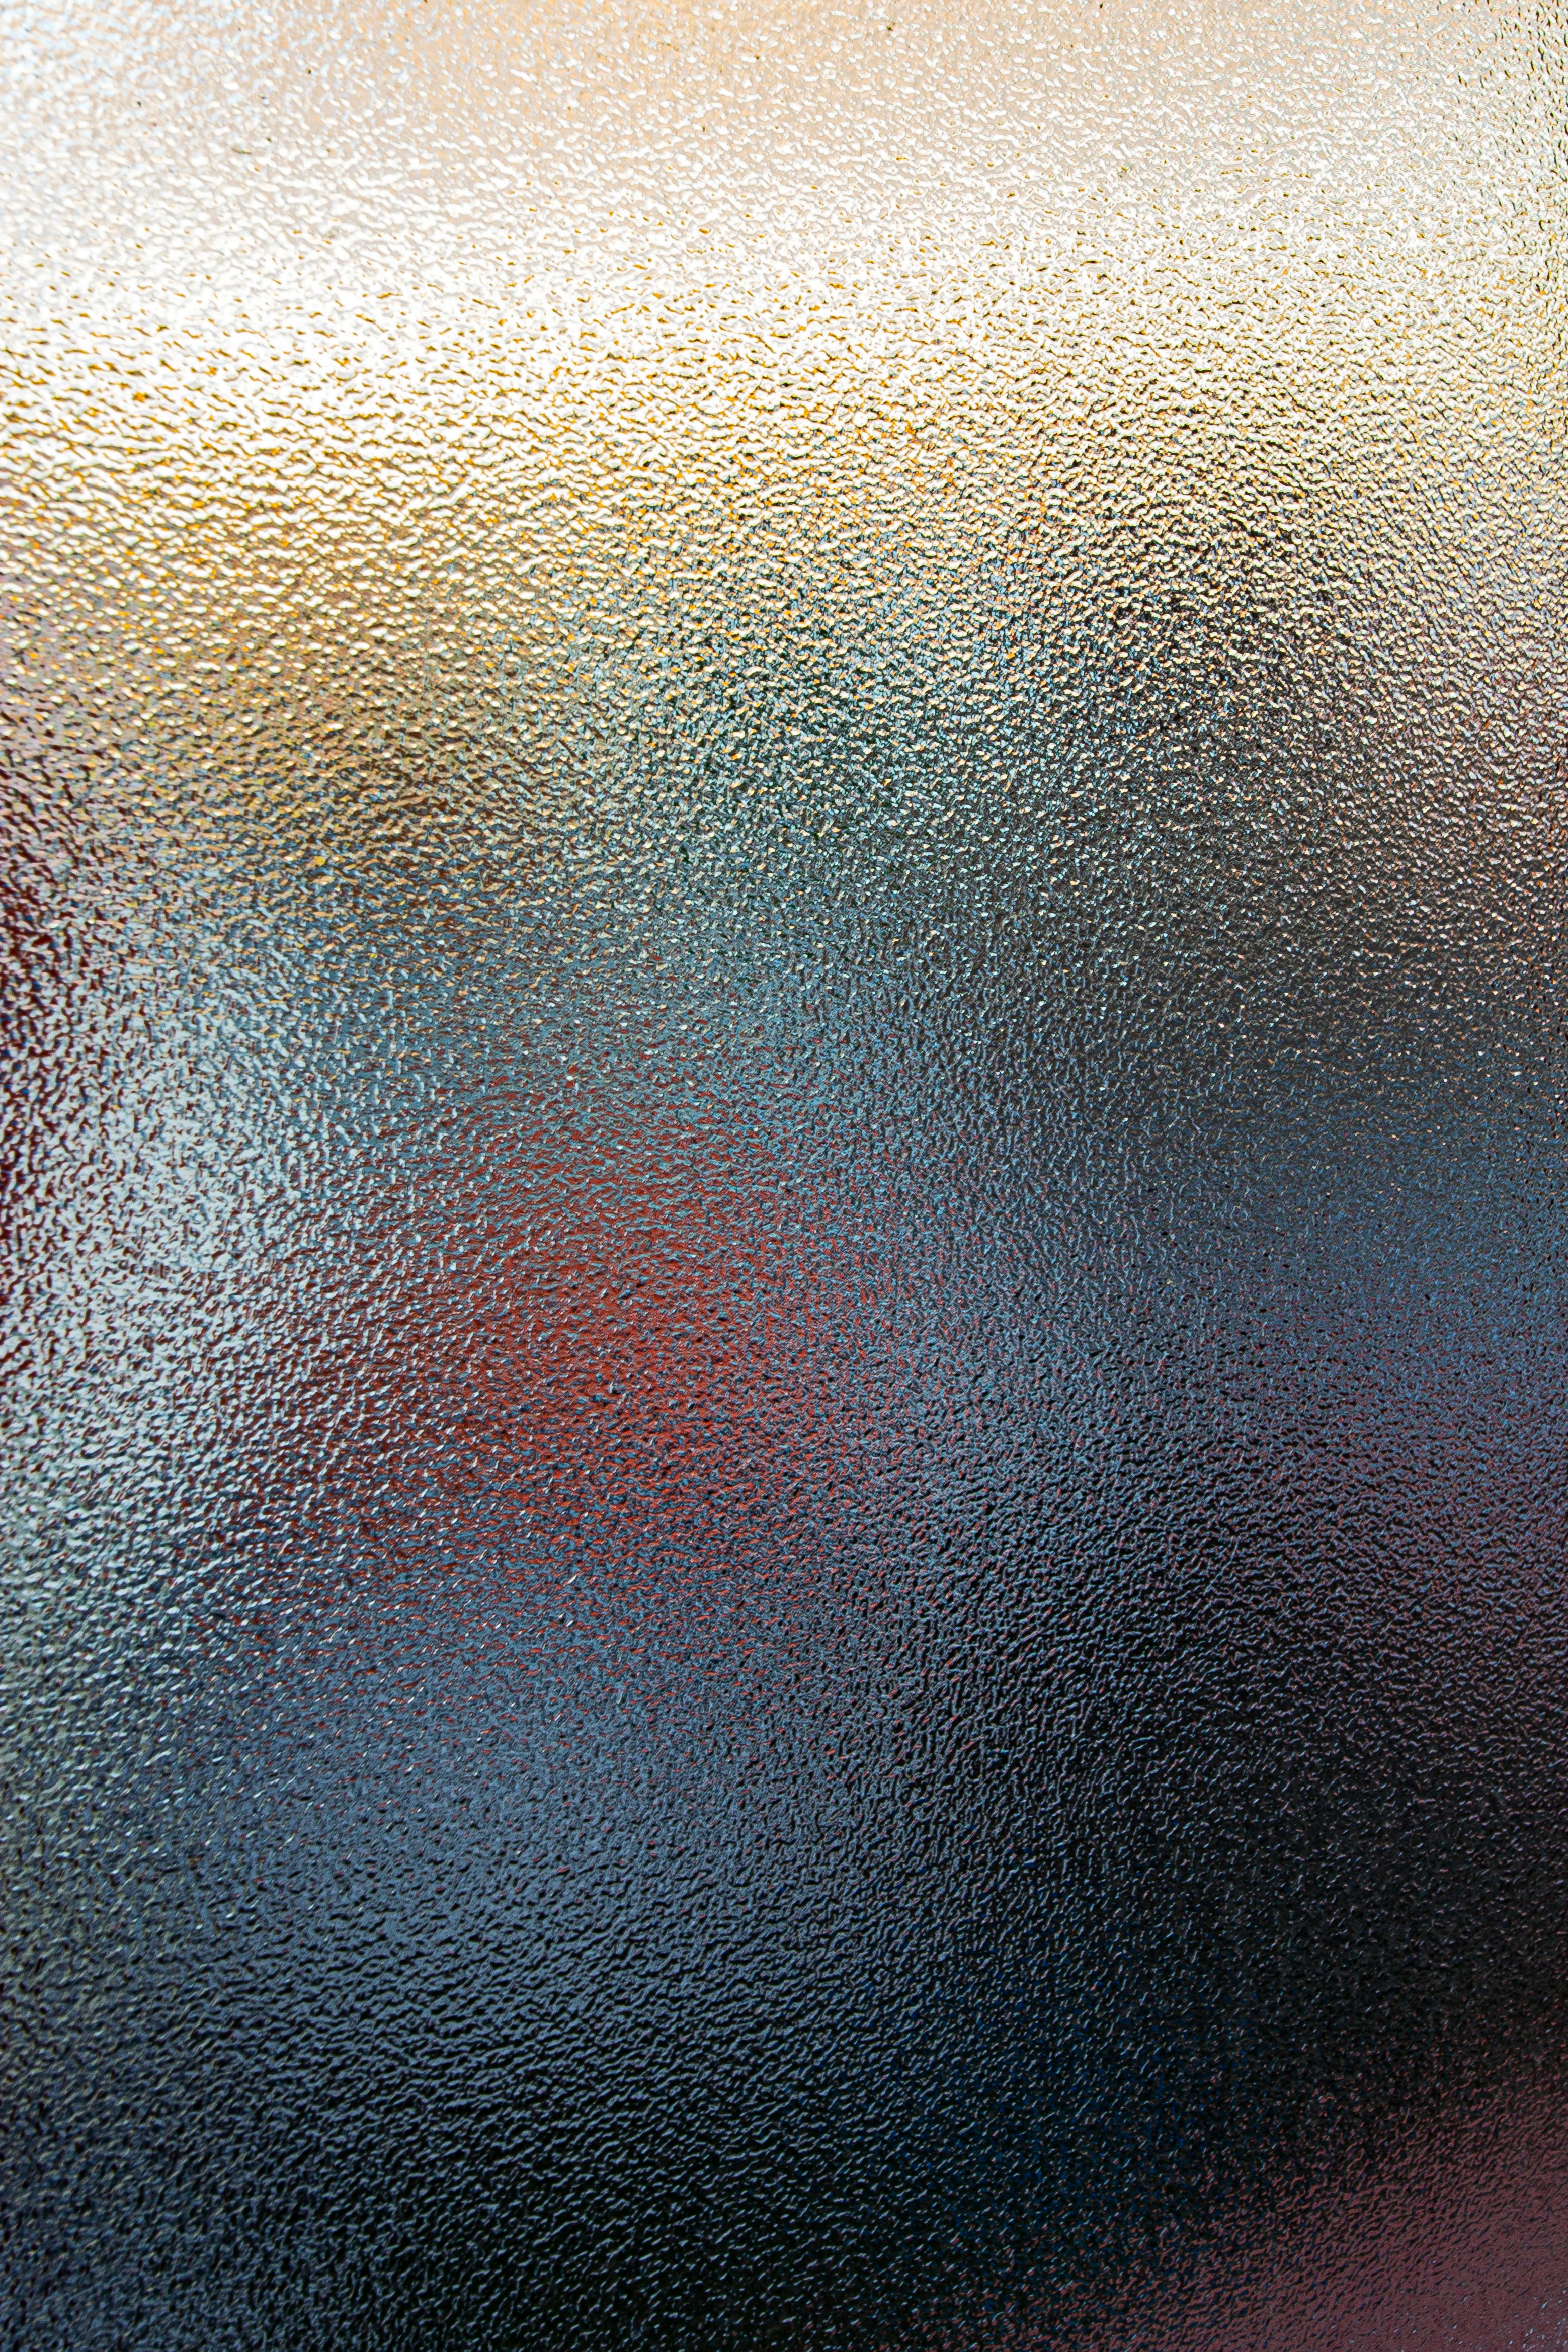 defocused specks on blurred surface